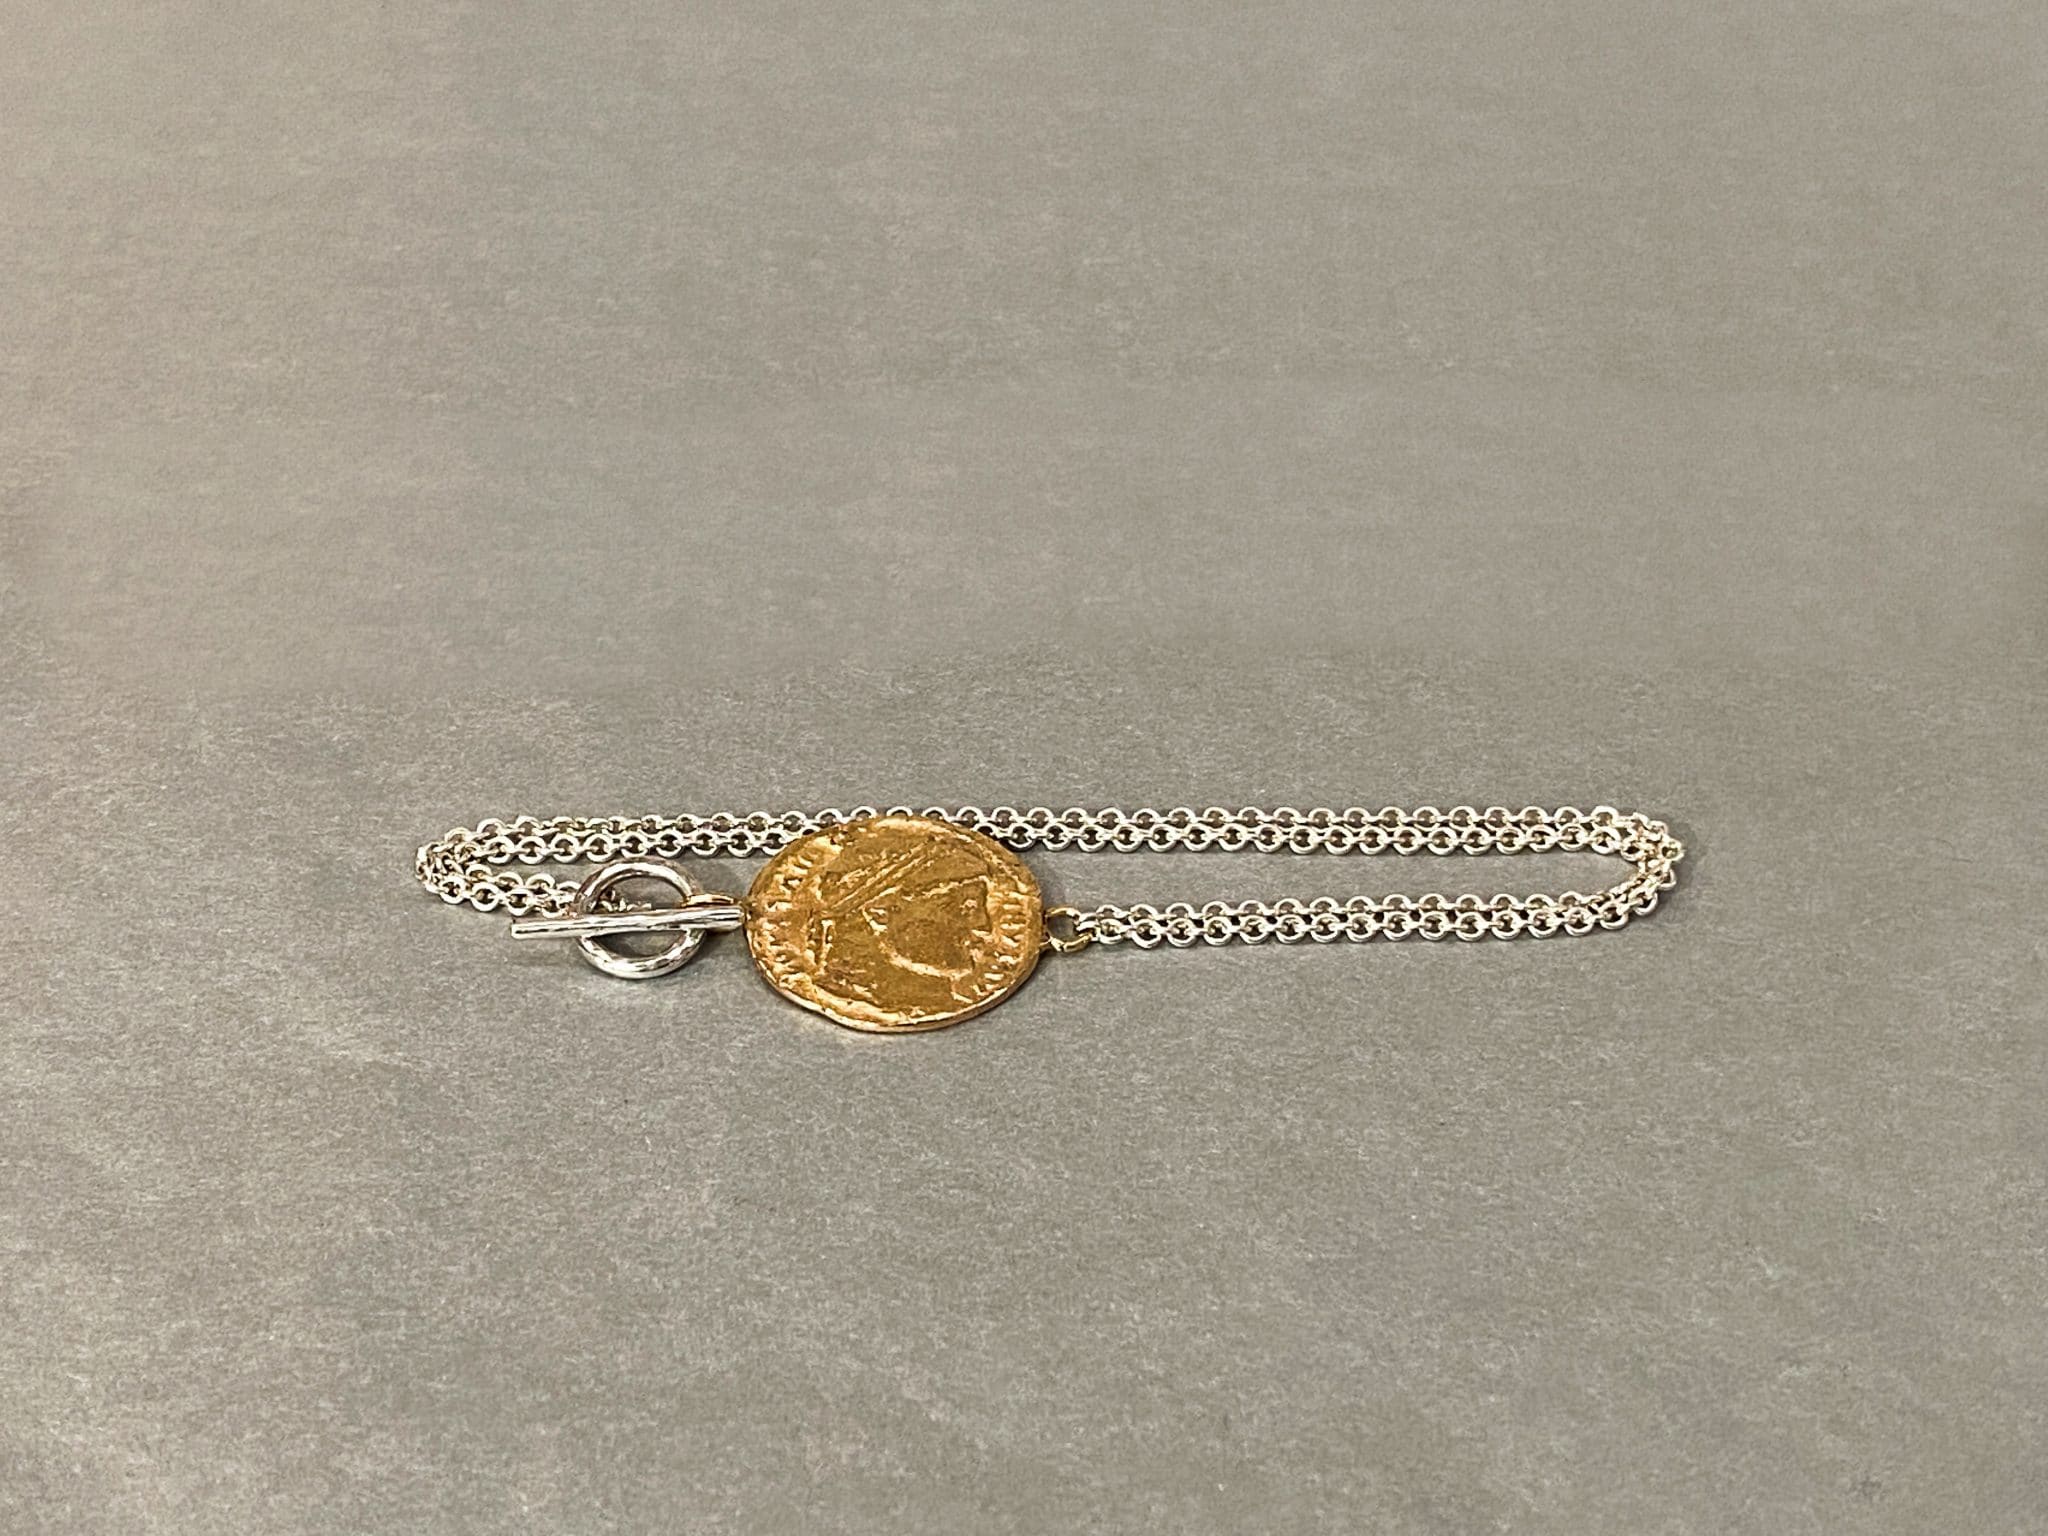 Armband aus Silber mit einer Münze